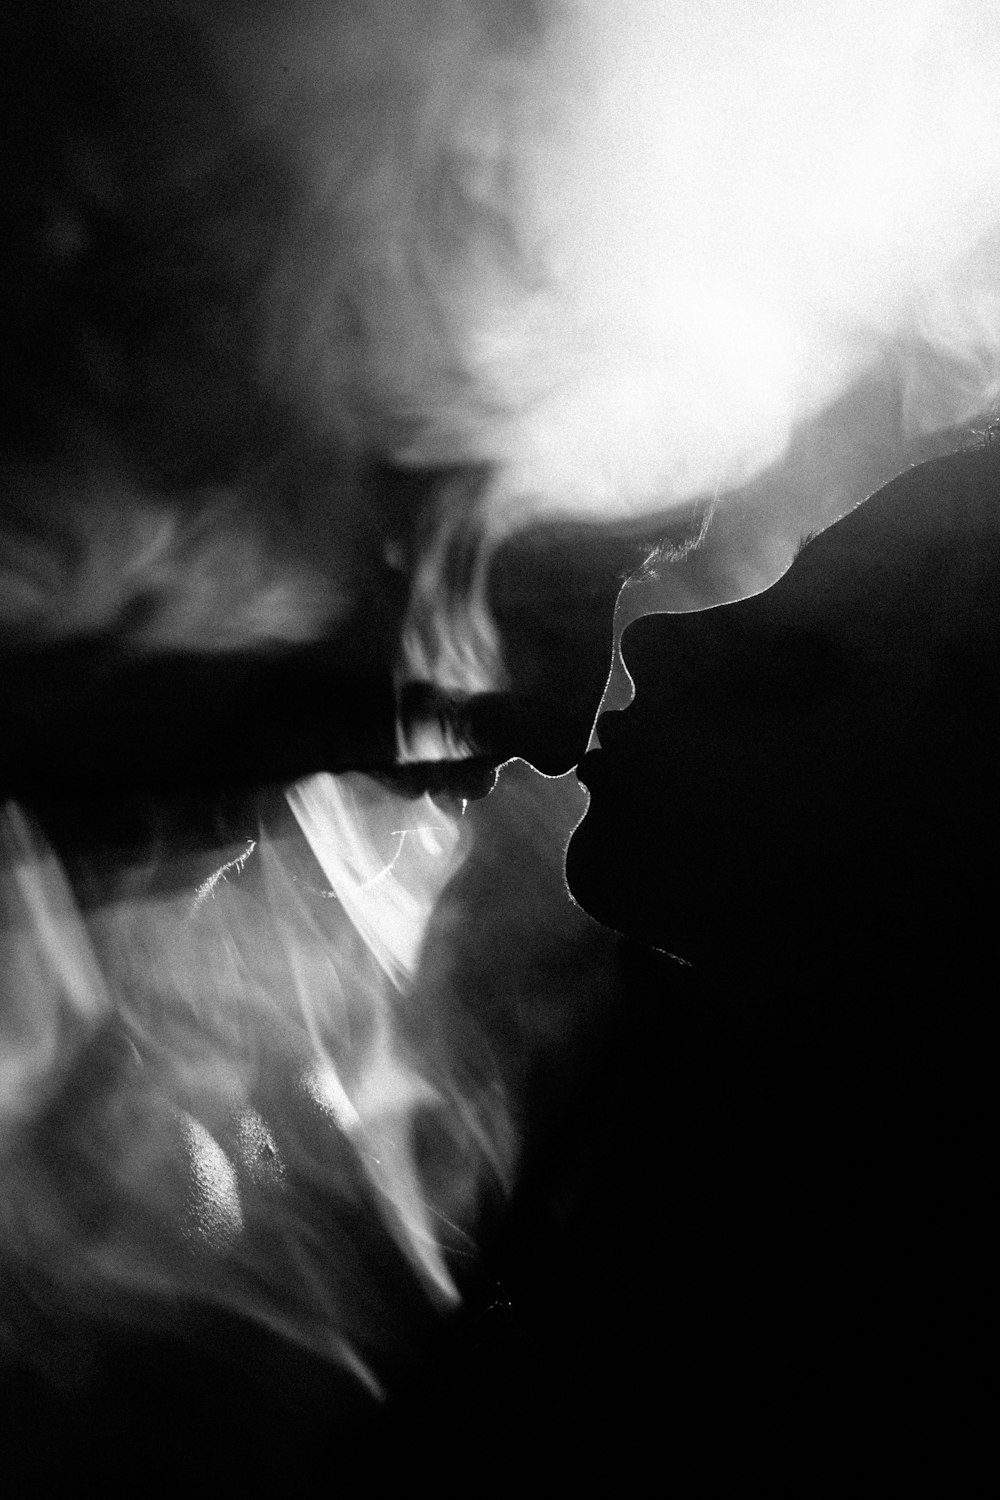 une photo en noir et blanc d’une personne fumant une cigarette